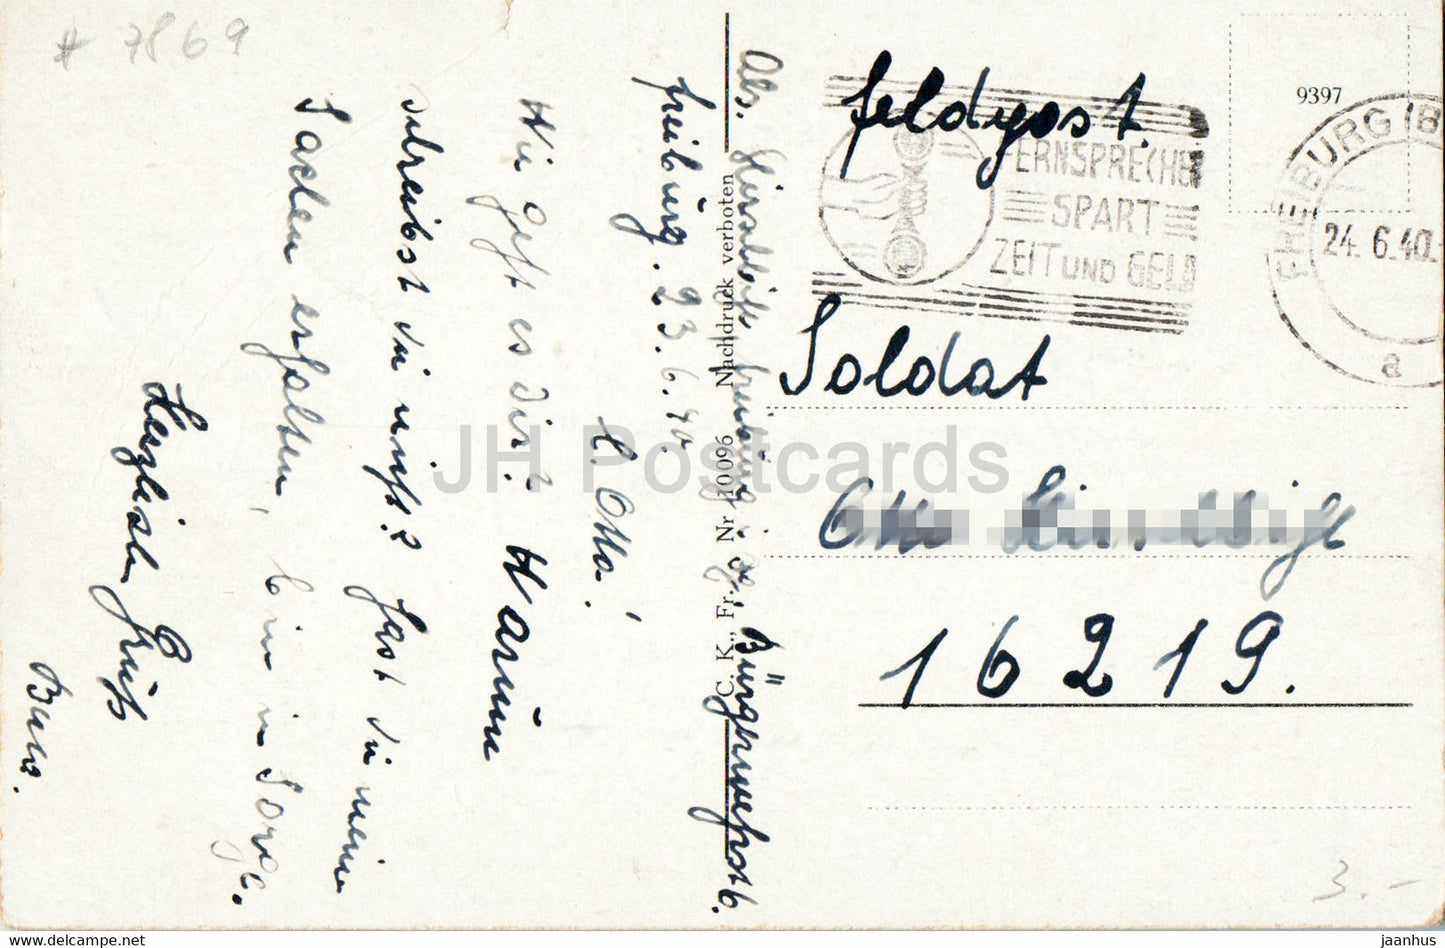 Blick ins Wiese Tal vom Feldberg aus - Wiesetal - Feldpost - Militärpost - alte Postkarte - 1940 - Deutschland - gebraucht